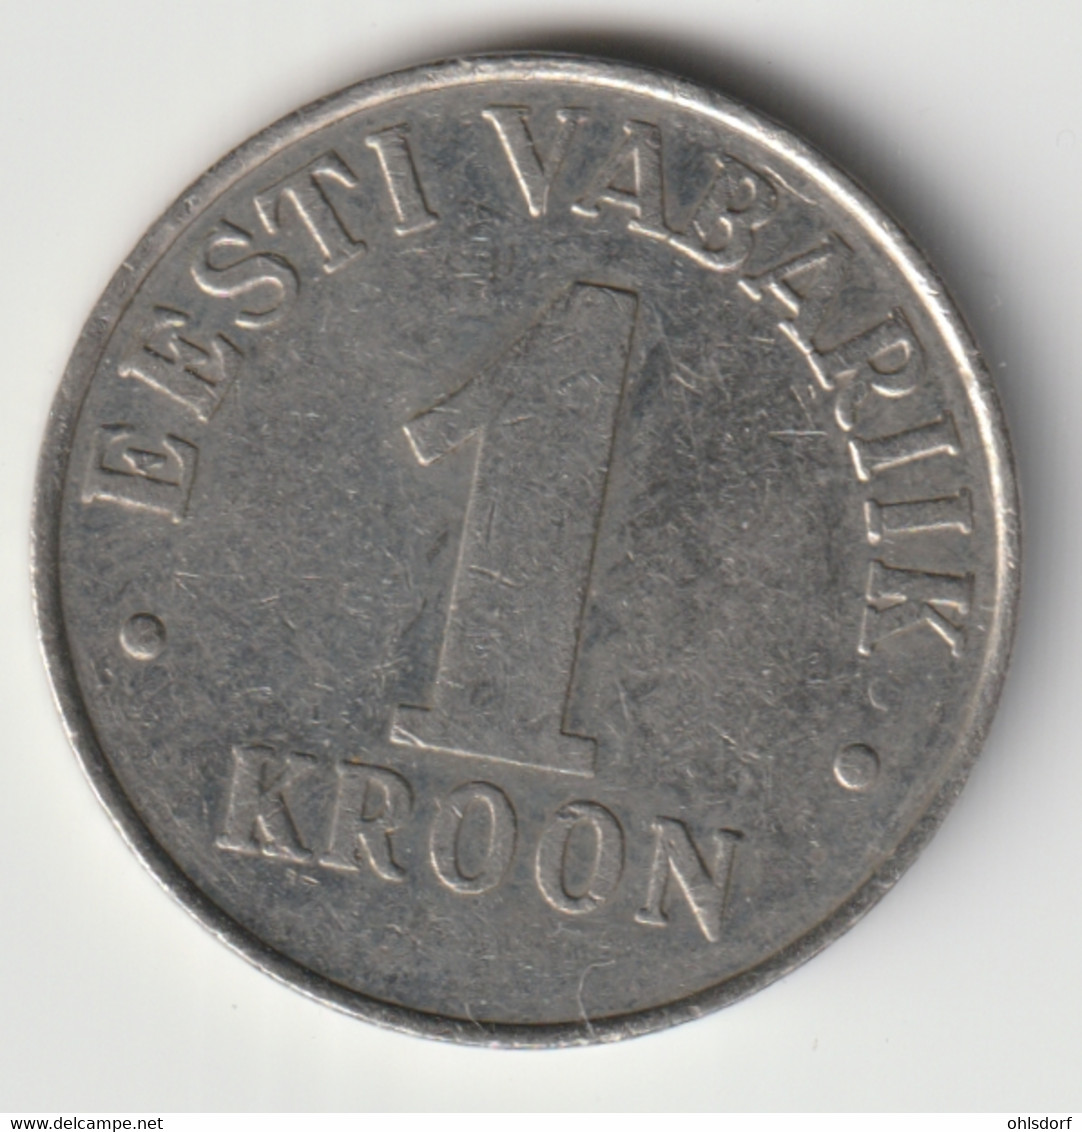 EESTI 1995: 1 Kroon, KM 28 - Estonia